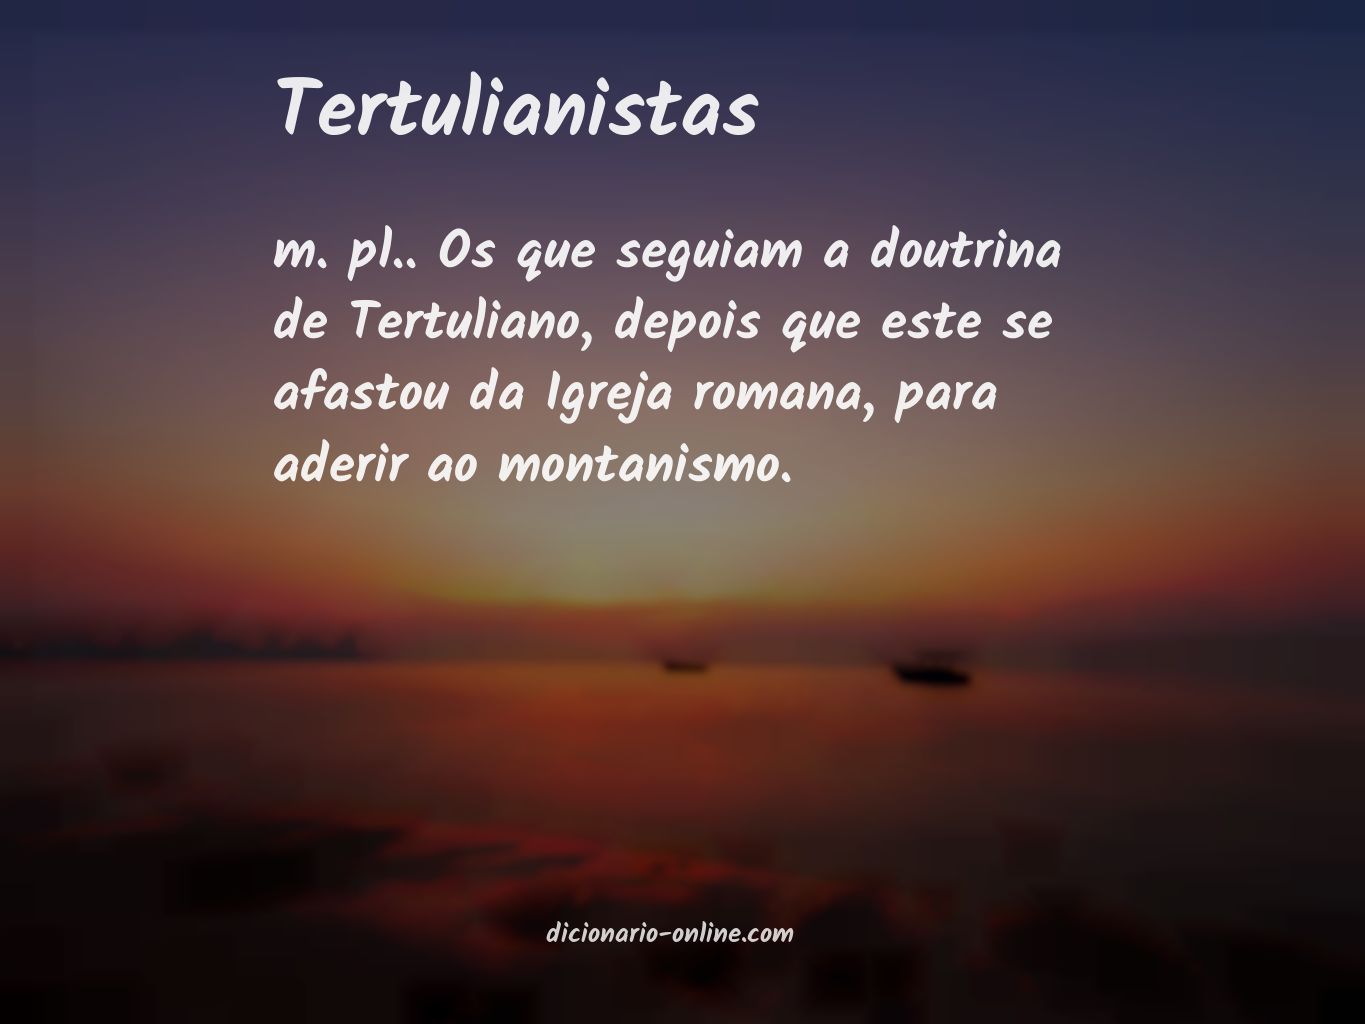 Significado de tertulianistas